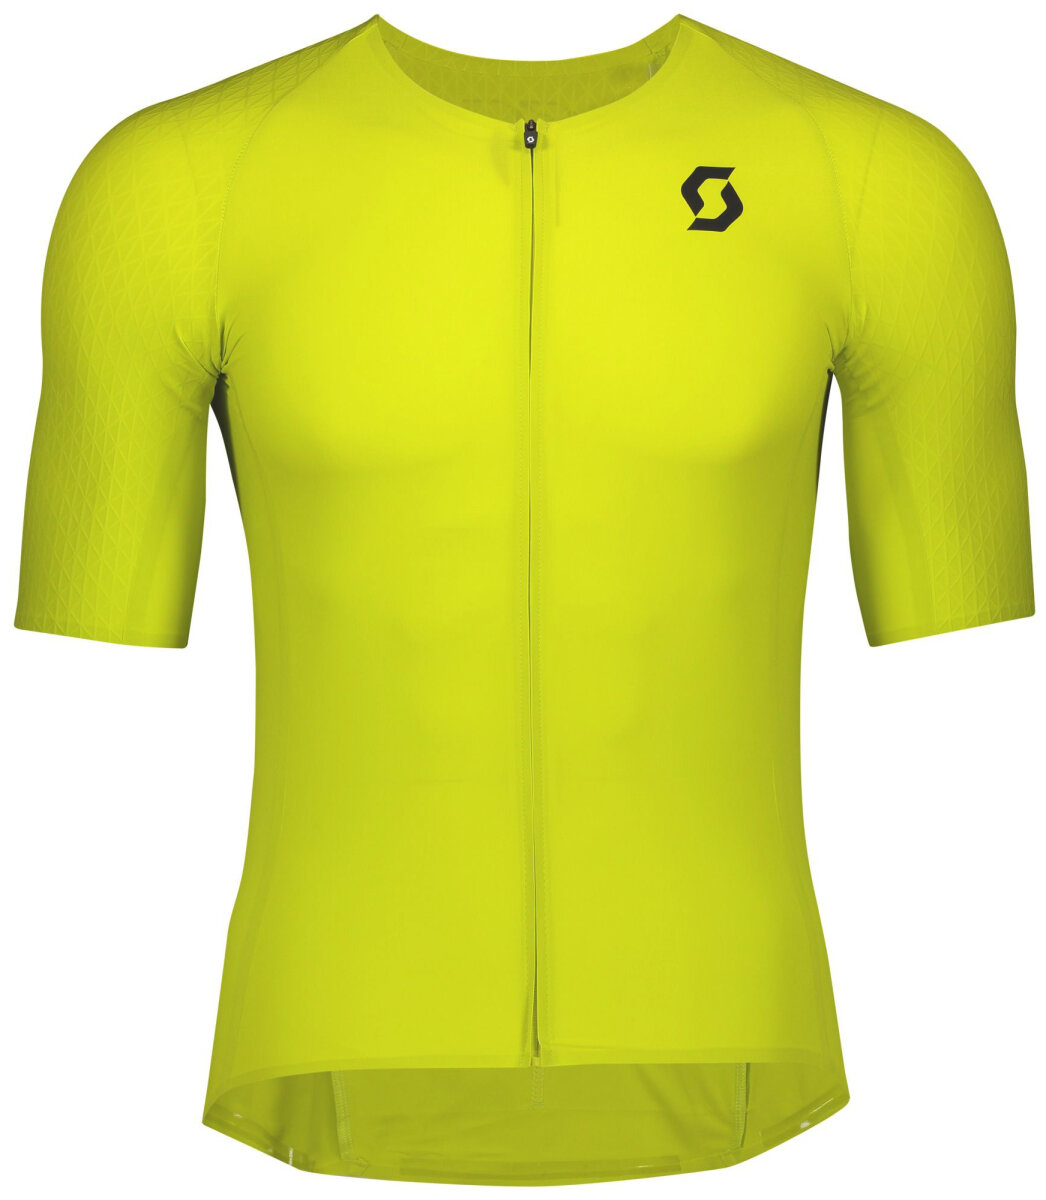 Джерси велосипедный Scott RC Premium Short Sleeve Shirt (Sulphur Yellow/Black) 280314.5083.009, 280314.5083.008, 280314.5083.006, 280314.5083.007, 280314.5083.010